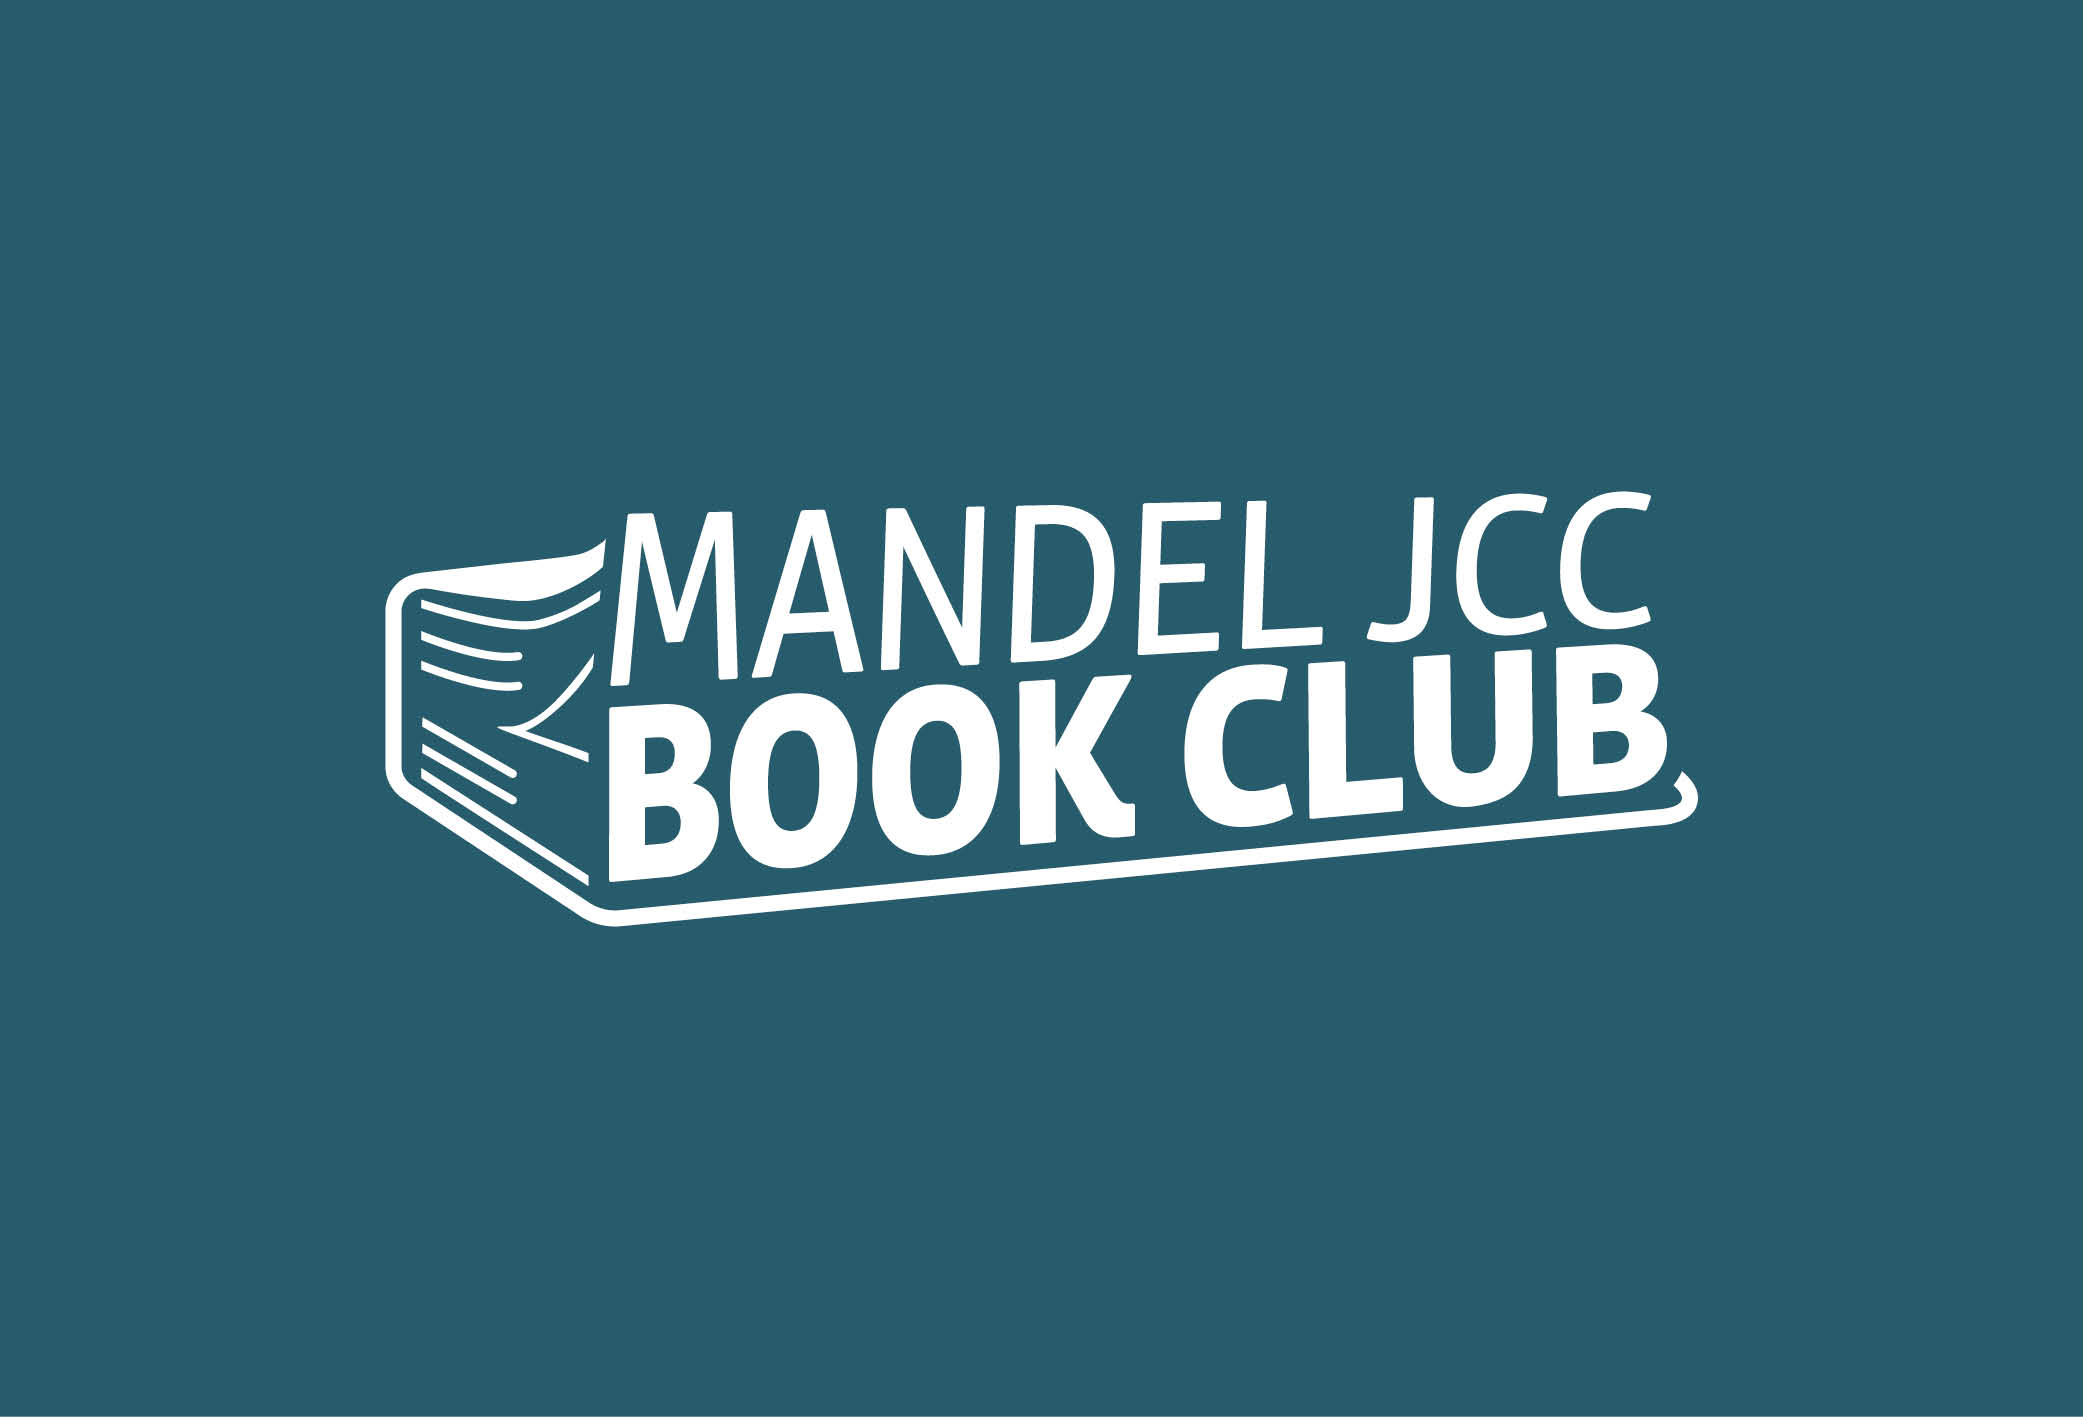 BOOK The Mandel JCC Book Club